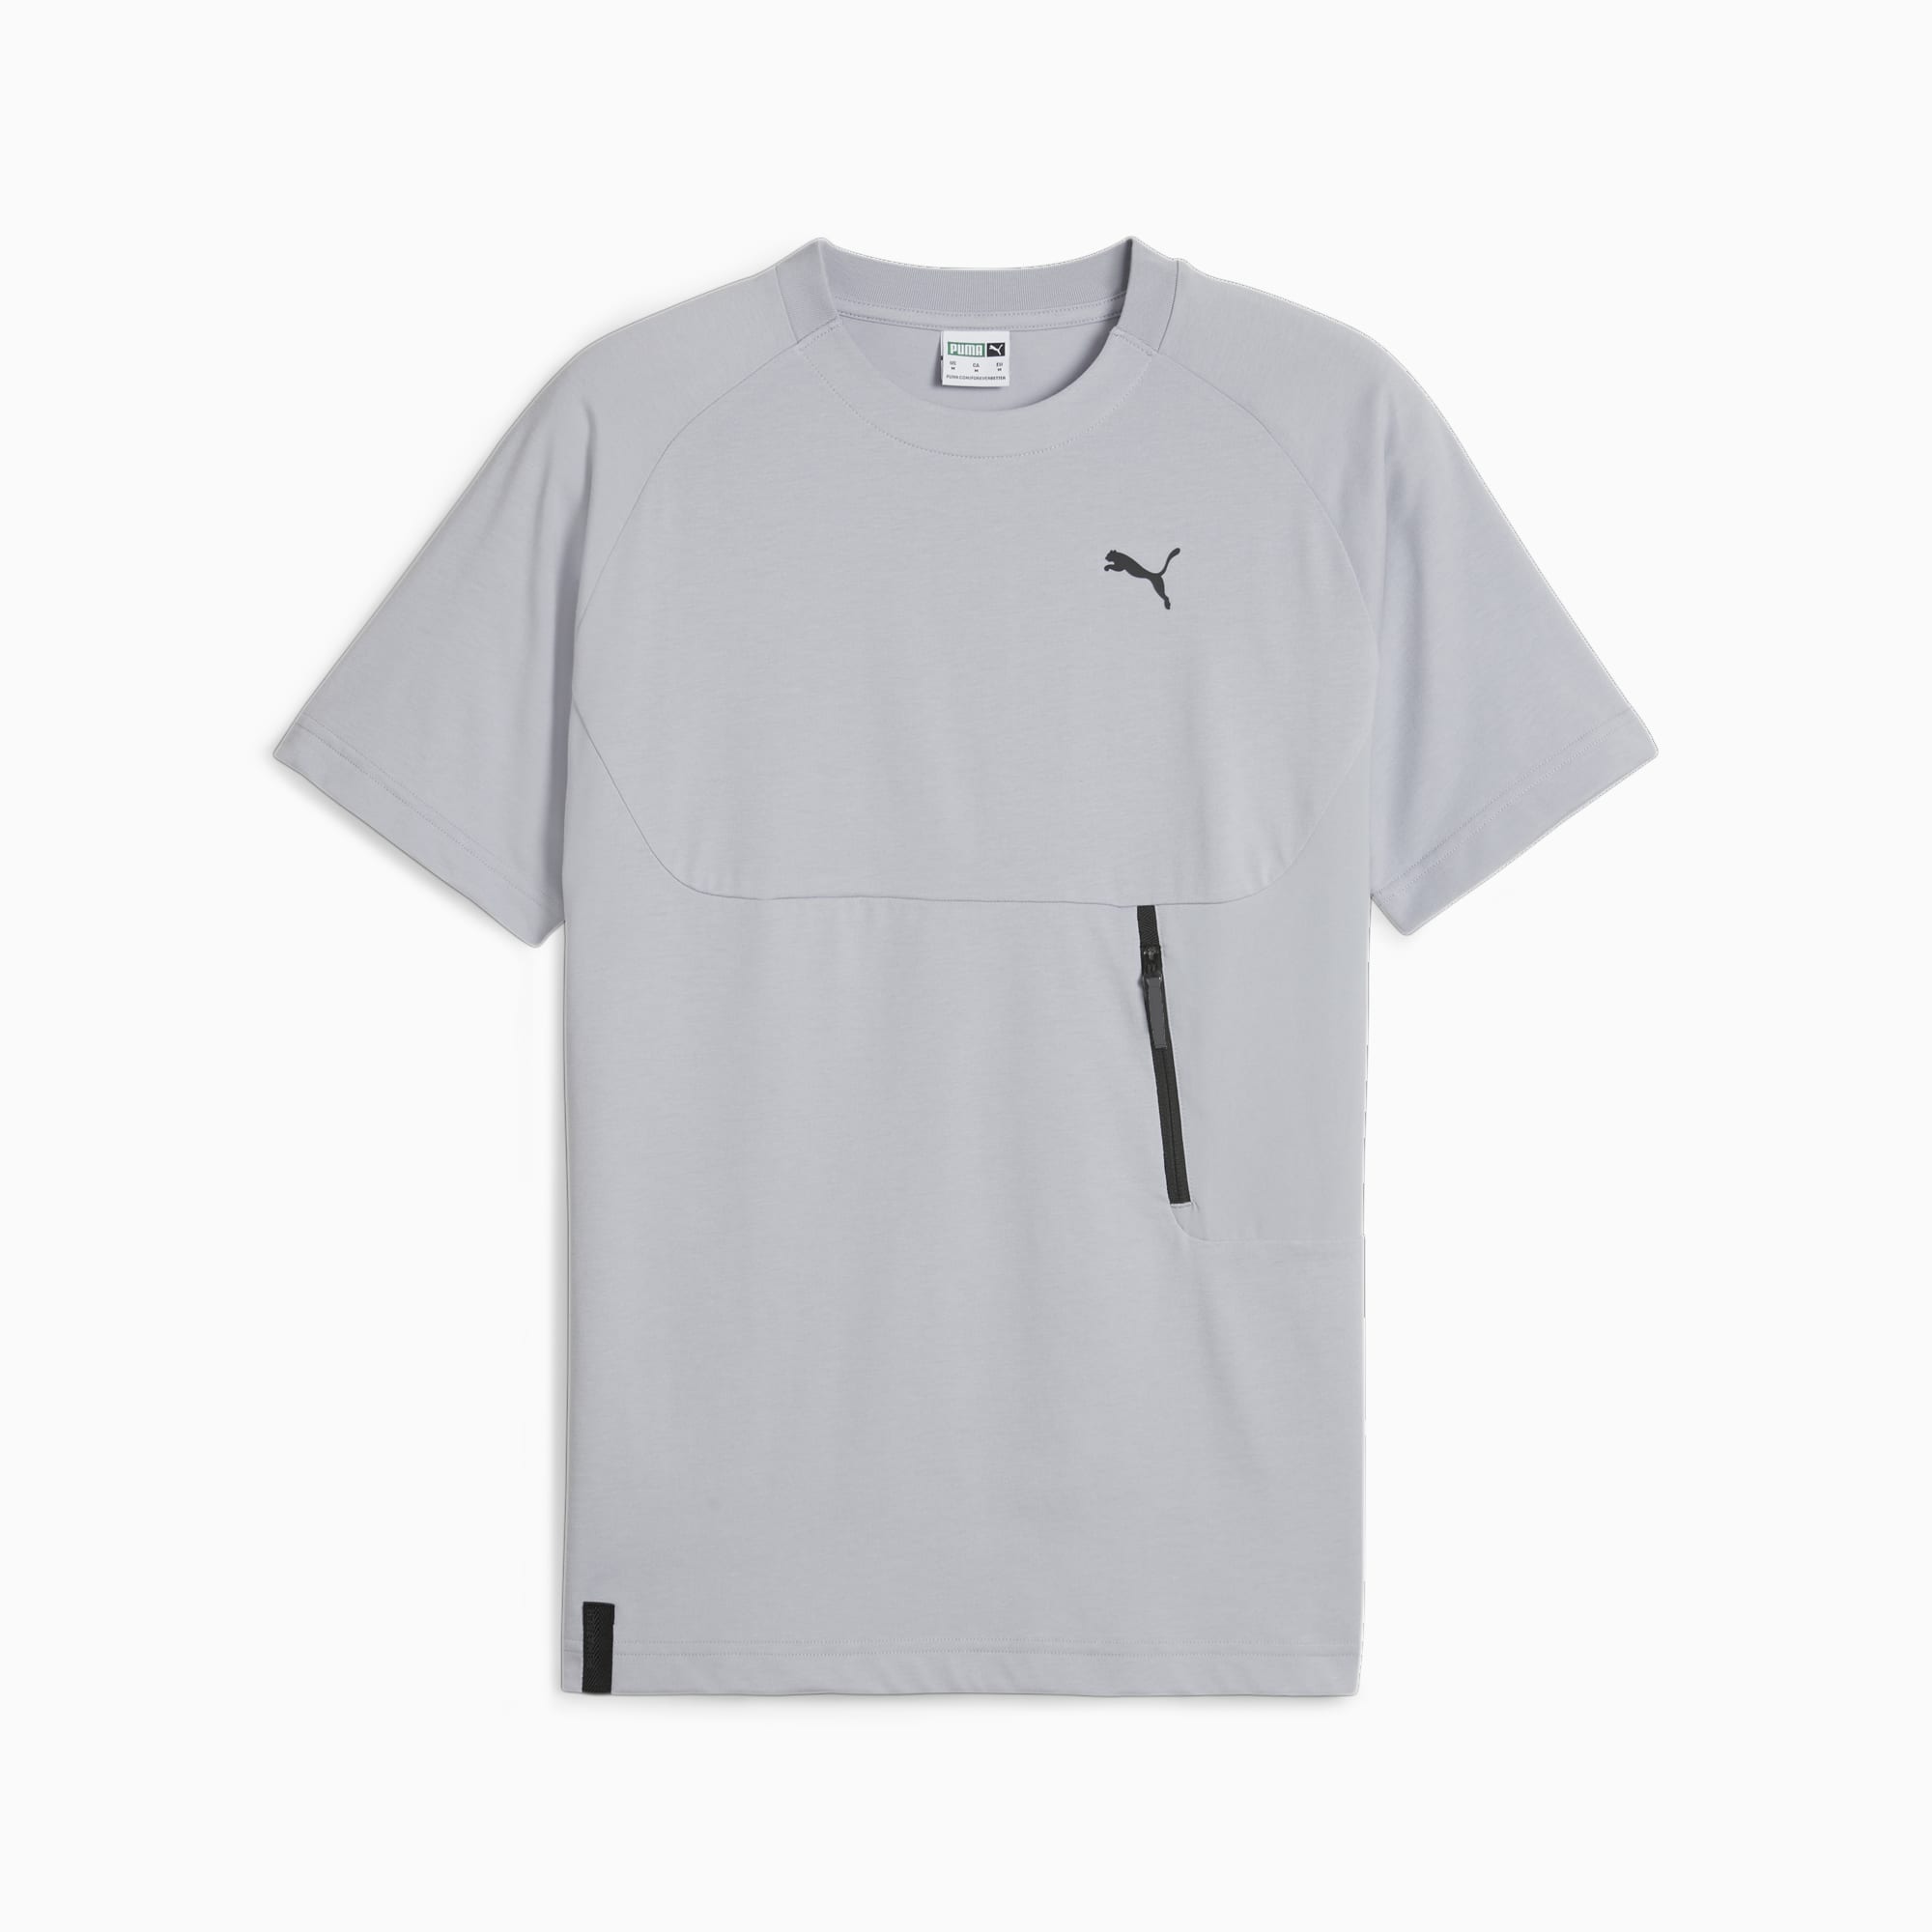 PUMATECH T-Shirt Mit Tasche Herren, Grau, Größe: M, Kleidung